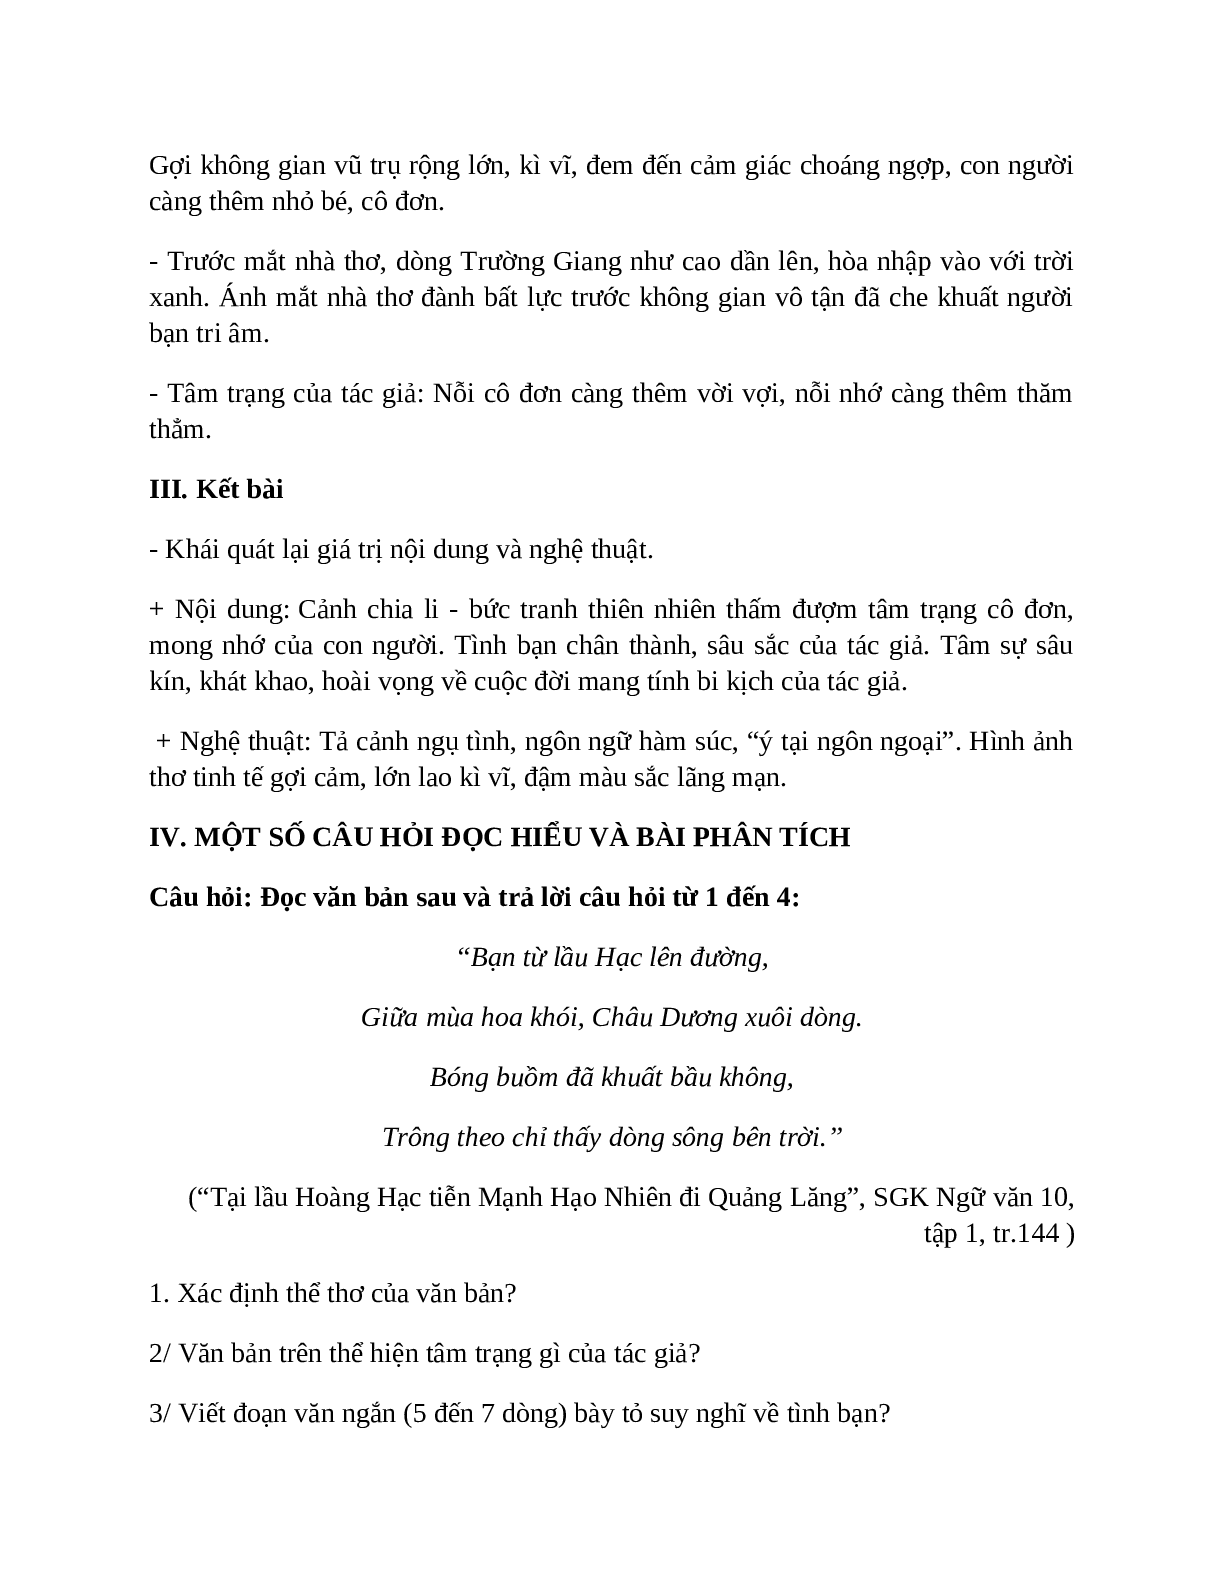 Sơ đồ tư duy bài Tại lầu Hoàng Hạc tiễn Mạnh Hạo Nhiên đi Quảng Lăng dễ nhớ, ngắn nhất - Ngữ văn lớp 10 (trang 5)